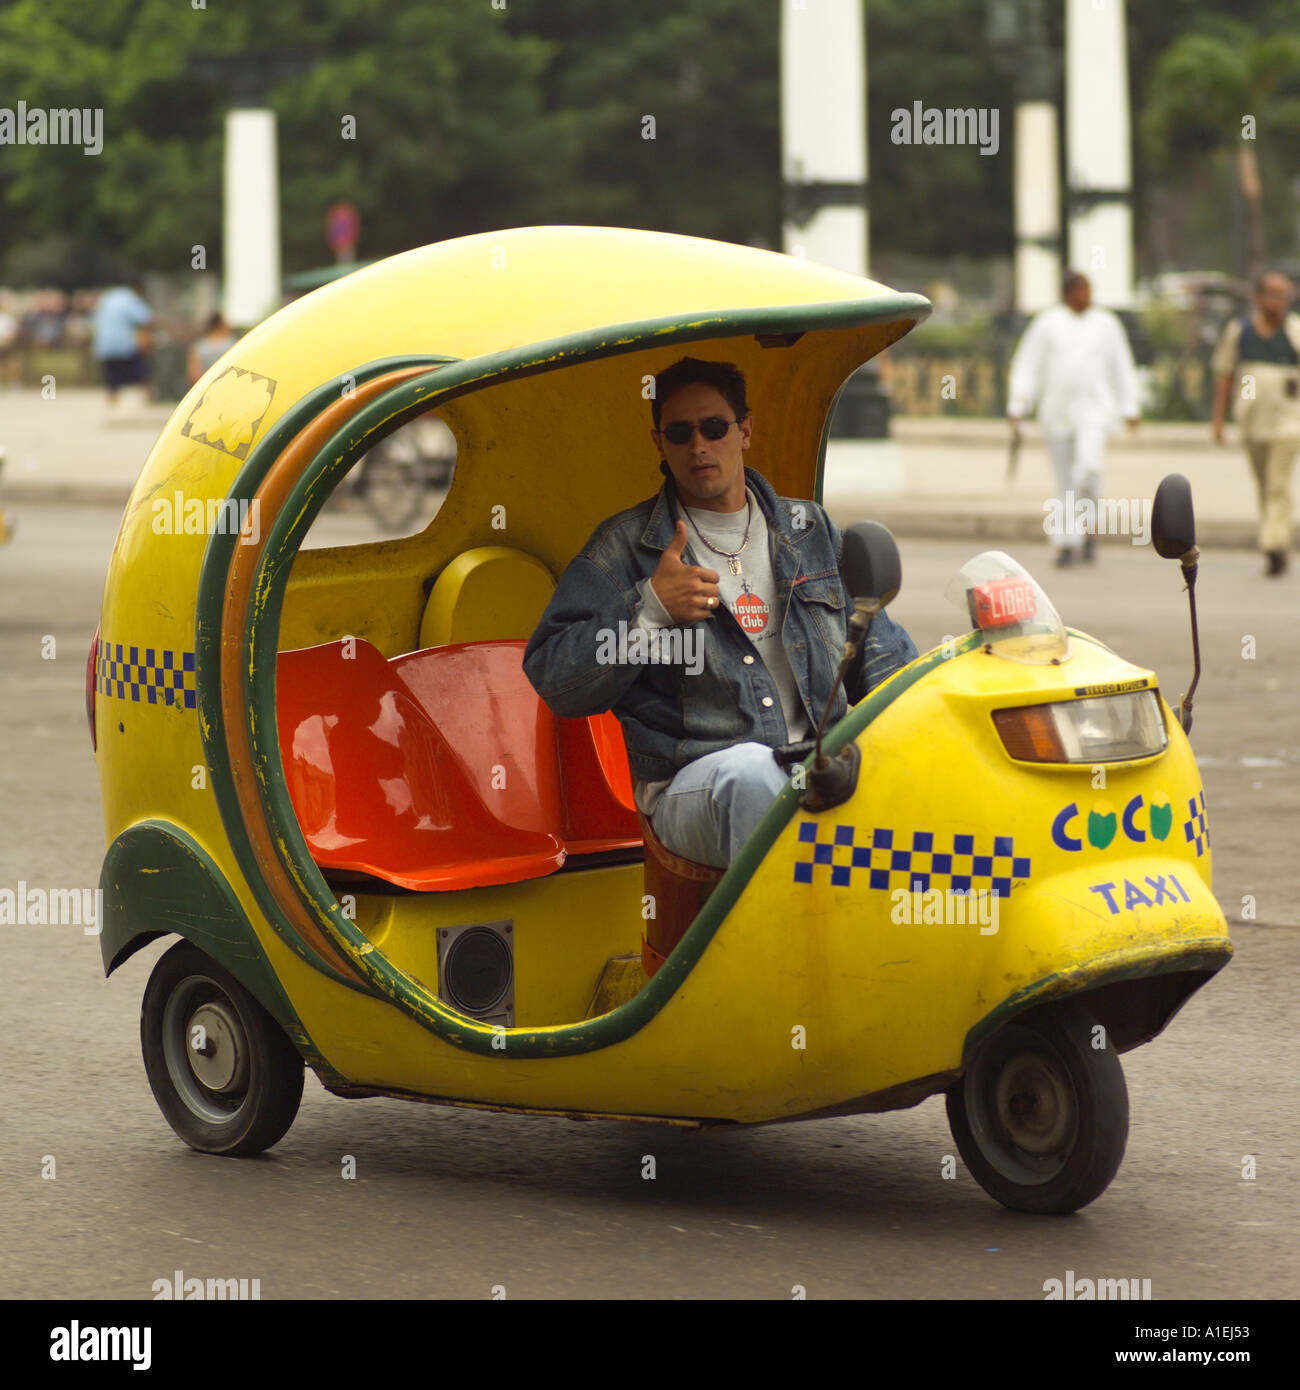 Porträt eines Mannes sitzend in einem Roller Taxi Havanna Kuba  Stockfotografie - Alamy